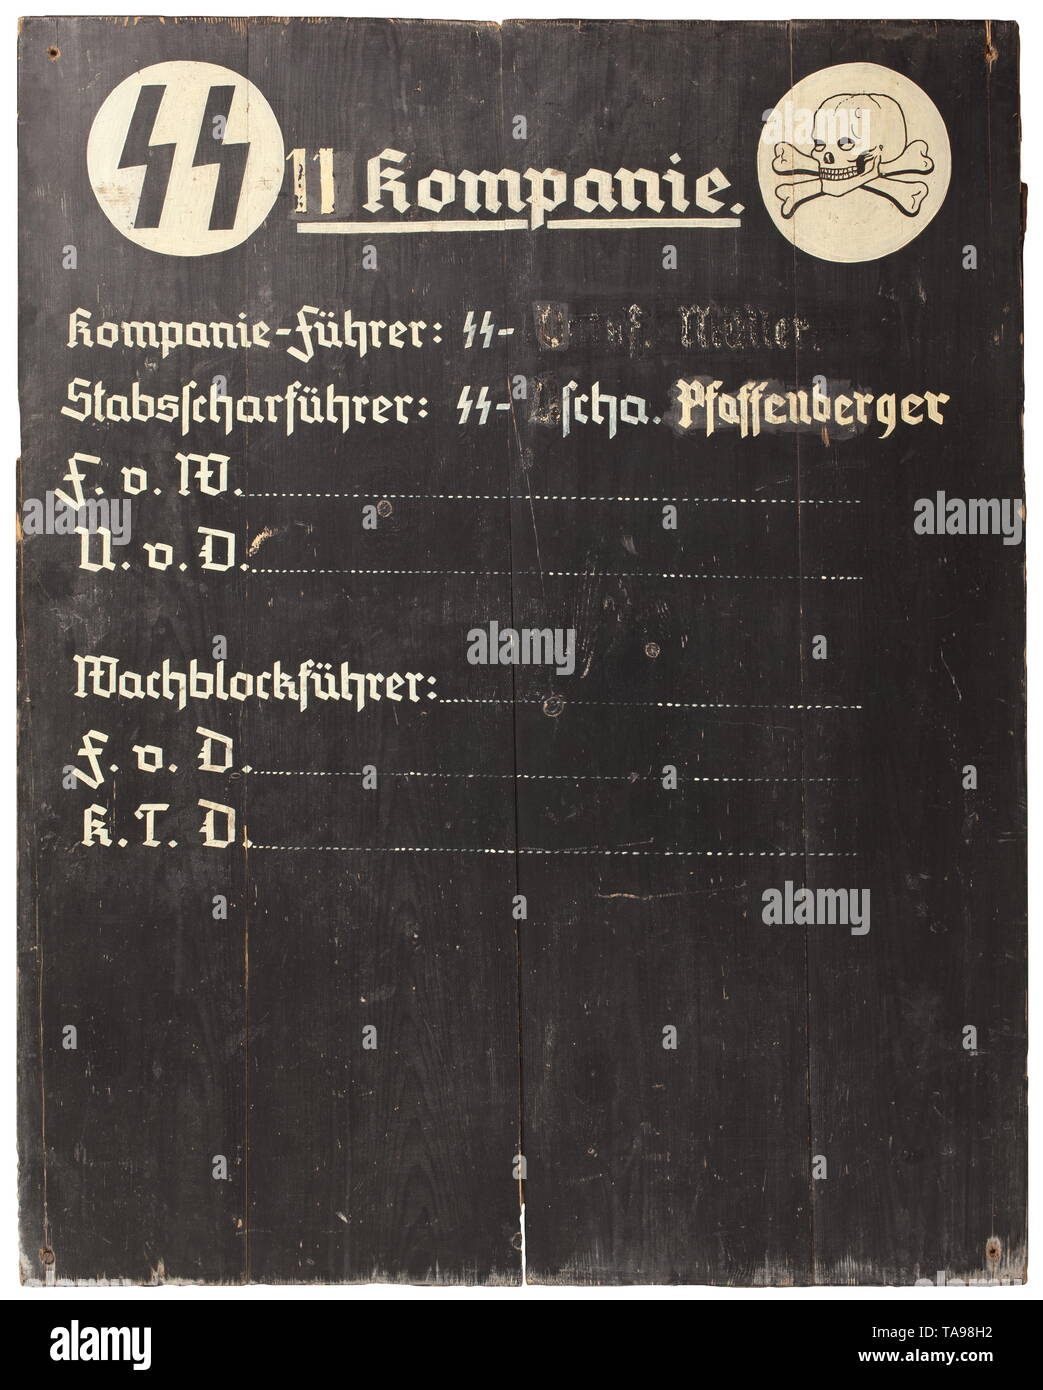 Un dazio SS scheda di un undicesimo Azienda Legno da quattro tavole di legno, lato anteriore verniciata di nero con SS rune e il cranio su dischi di bianco, tra il '11. Kompanie', al di sotto di esso 'Kompanie-Führer: SS-Ostuf Müller - Stabsscharführer: SS-U.Scha. Pfaffenberger' (parzialmente cosparse in lettere), alternando i dazi 'F.v.W. - U.v.D. - Wachblockführer - F.v.D. - K.T.D.' con le righe vuote. Invertire il lato dipinto di campo-grigio e con il gesso disegni tattici. Negli angoli molto usurati i fori di montaggio. Dimensioni 120,5 x 96.85 cm. Estremamente raro. Il semplice ma solida lavorazione implica l'uso mobile o, Editorial-Use-solo Foto Stock